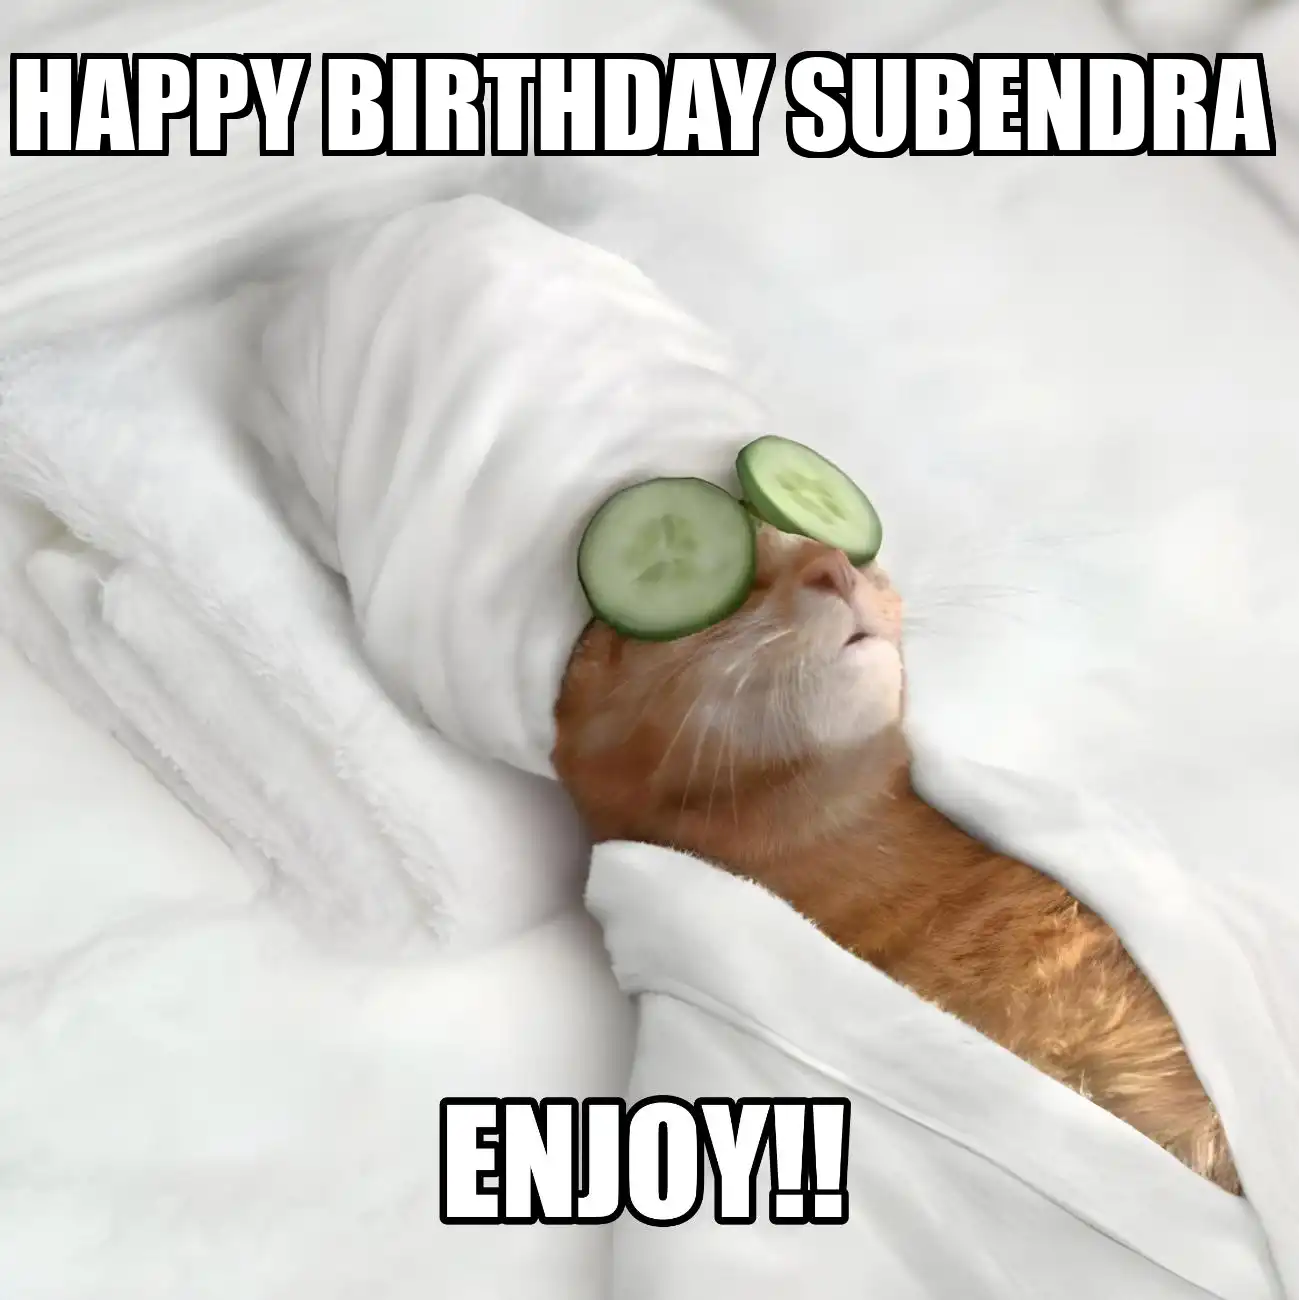 Happy Birthday Subendra Enjoy Cat Meme